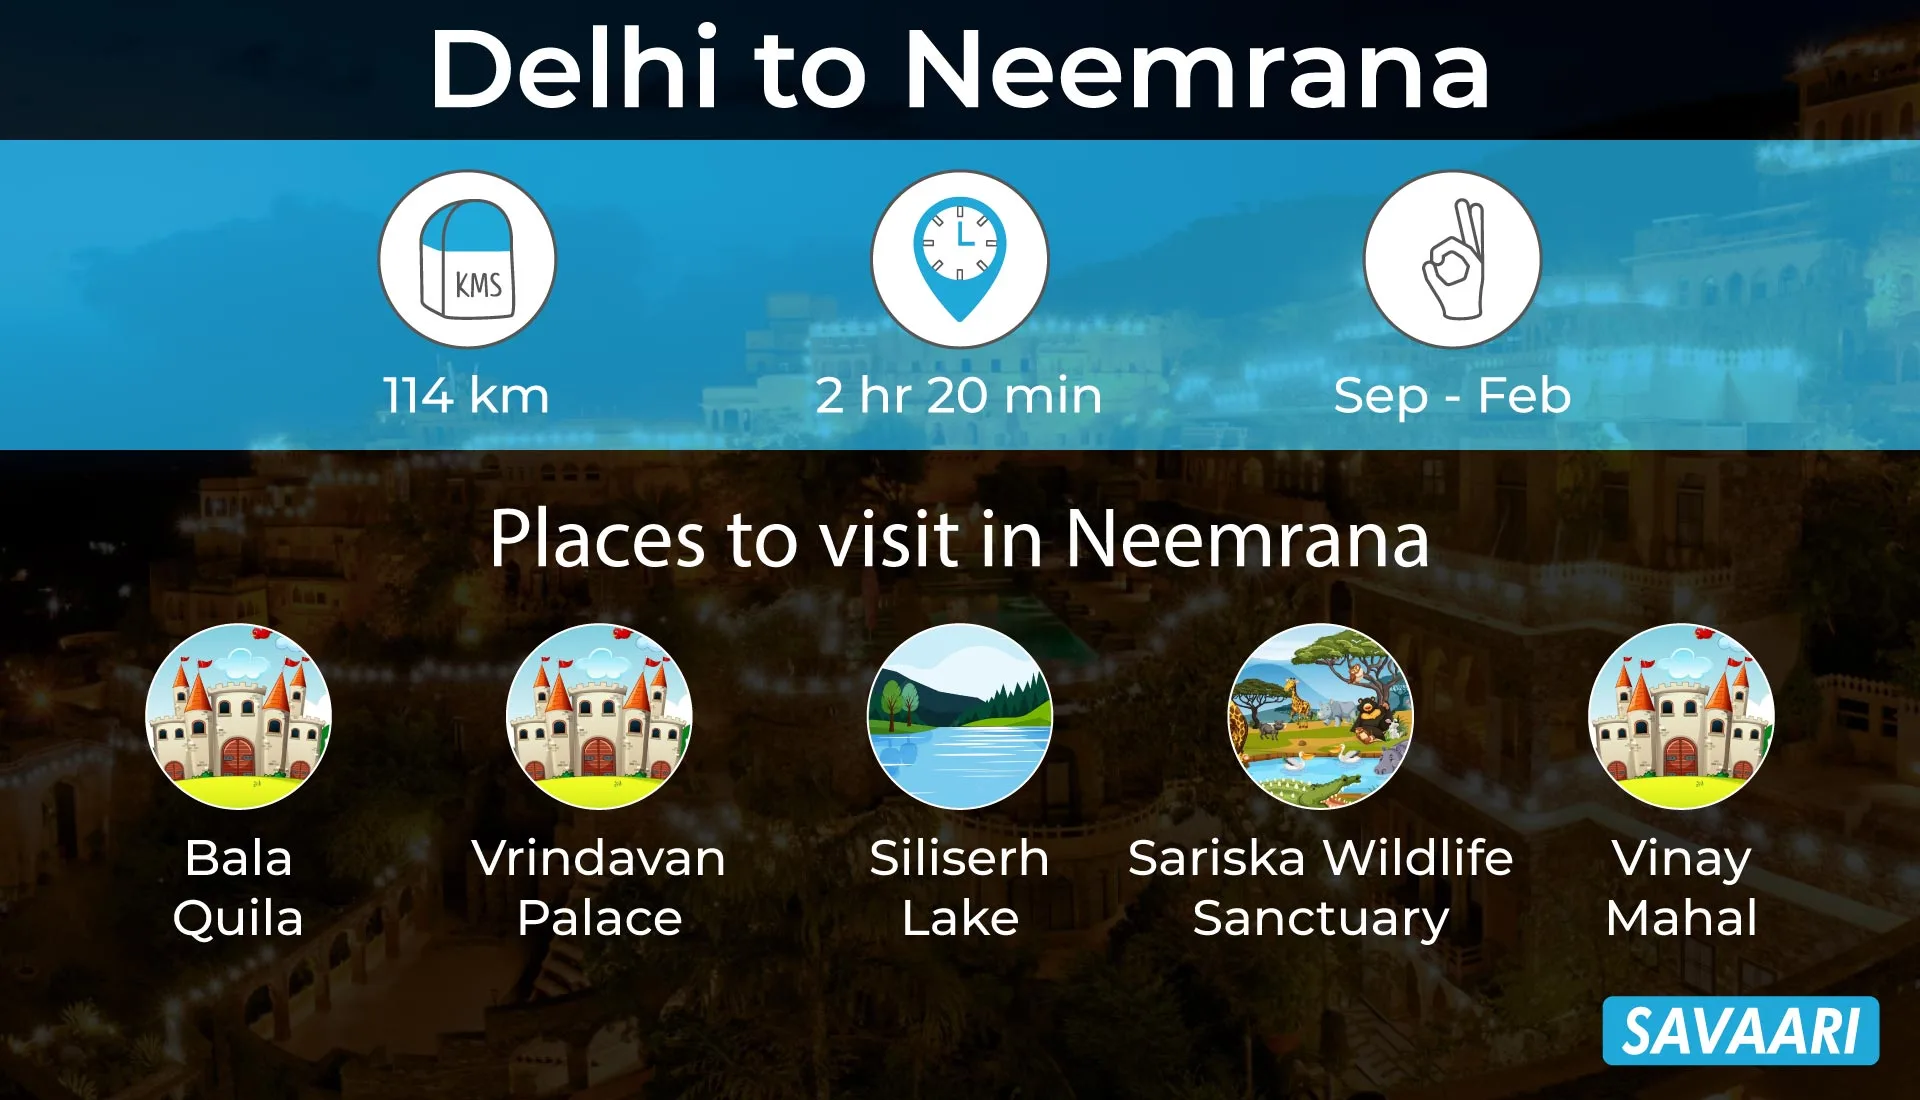 Delhi to Neemrana a scenic road trip